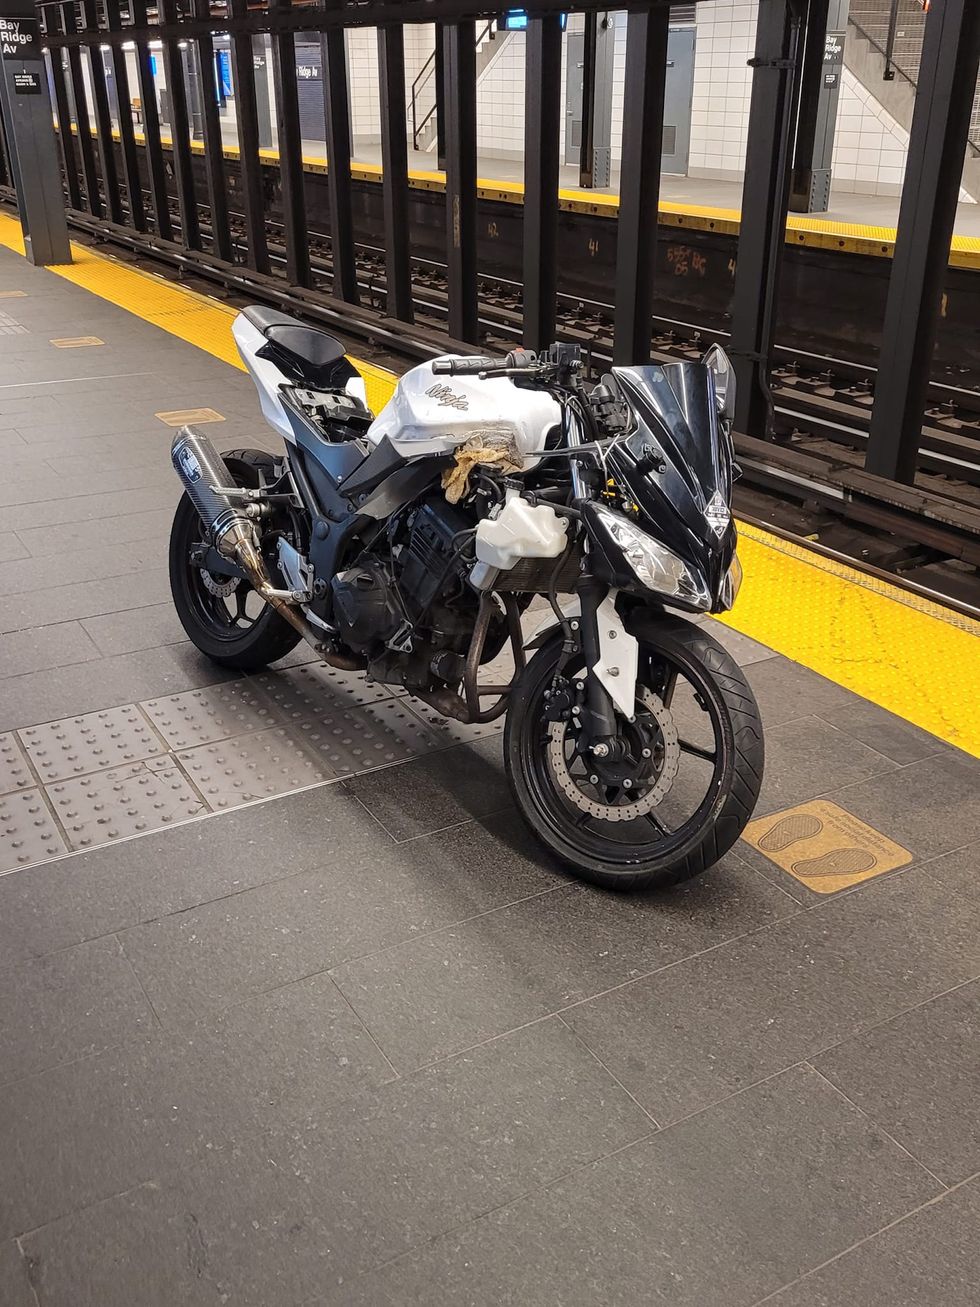 kawasaki ninja ditched in the nyc subway